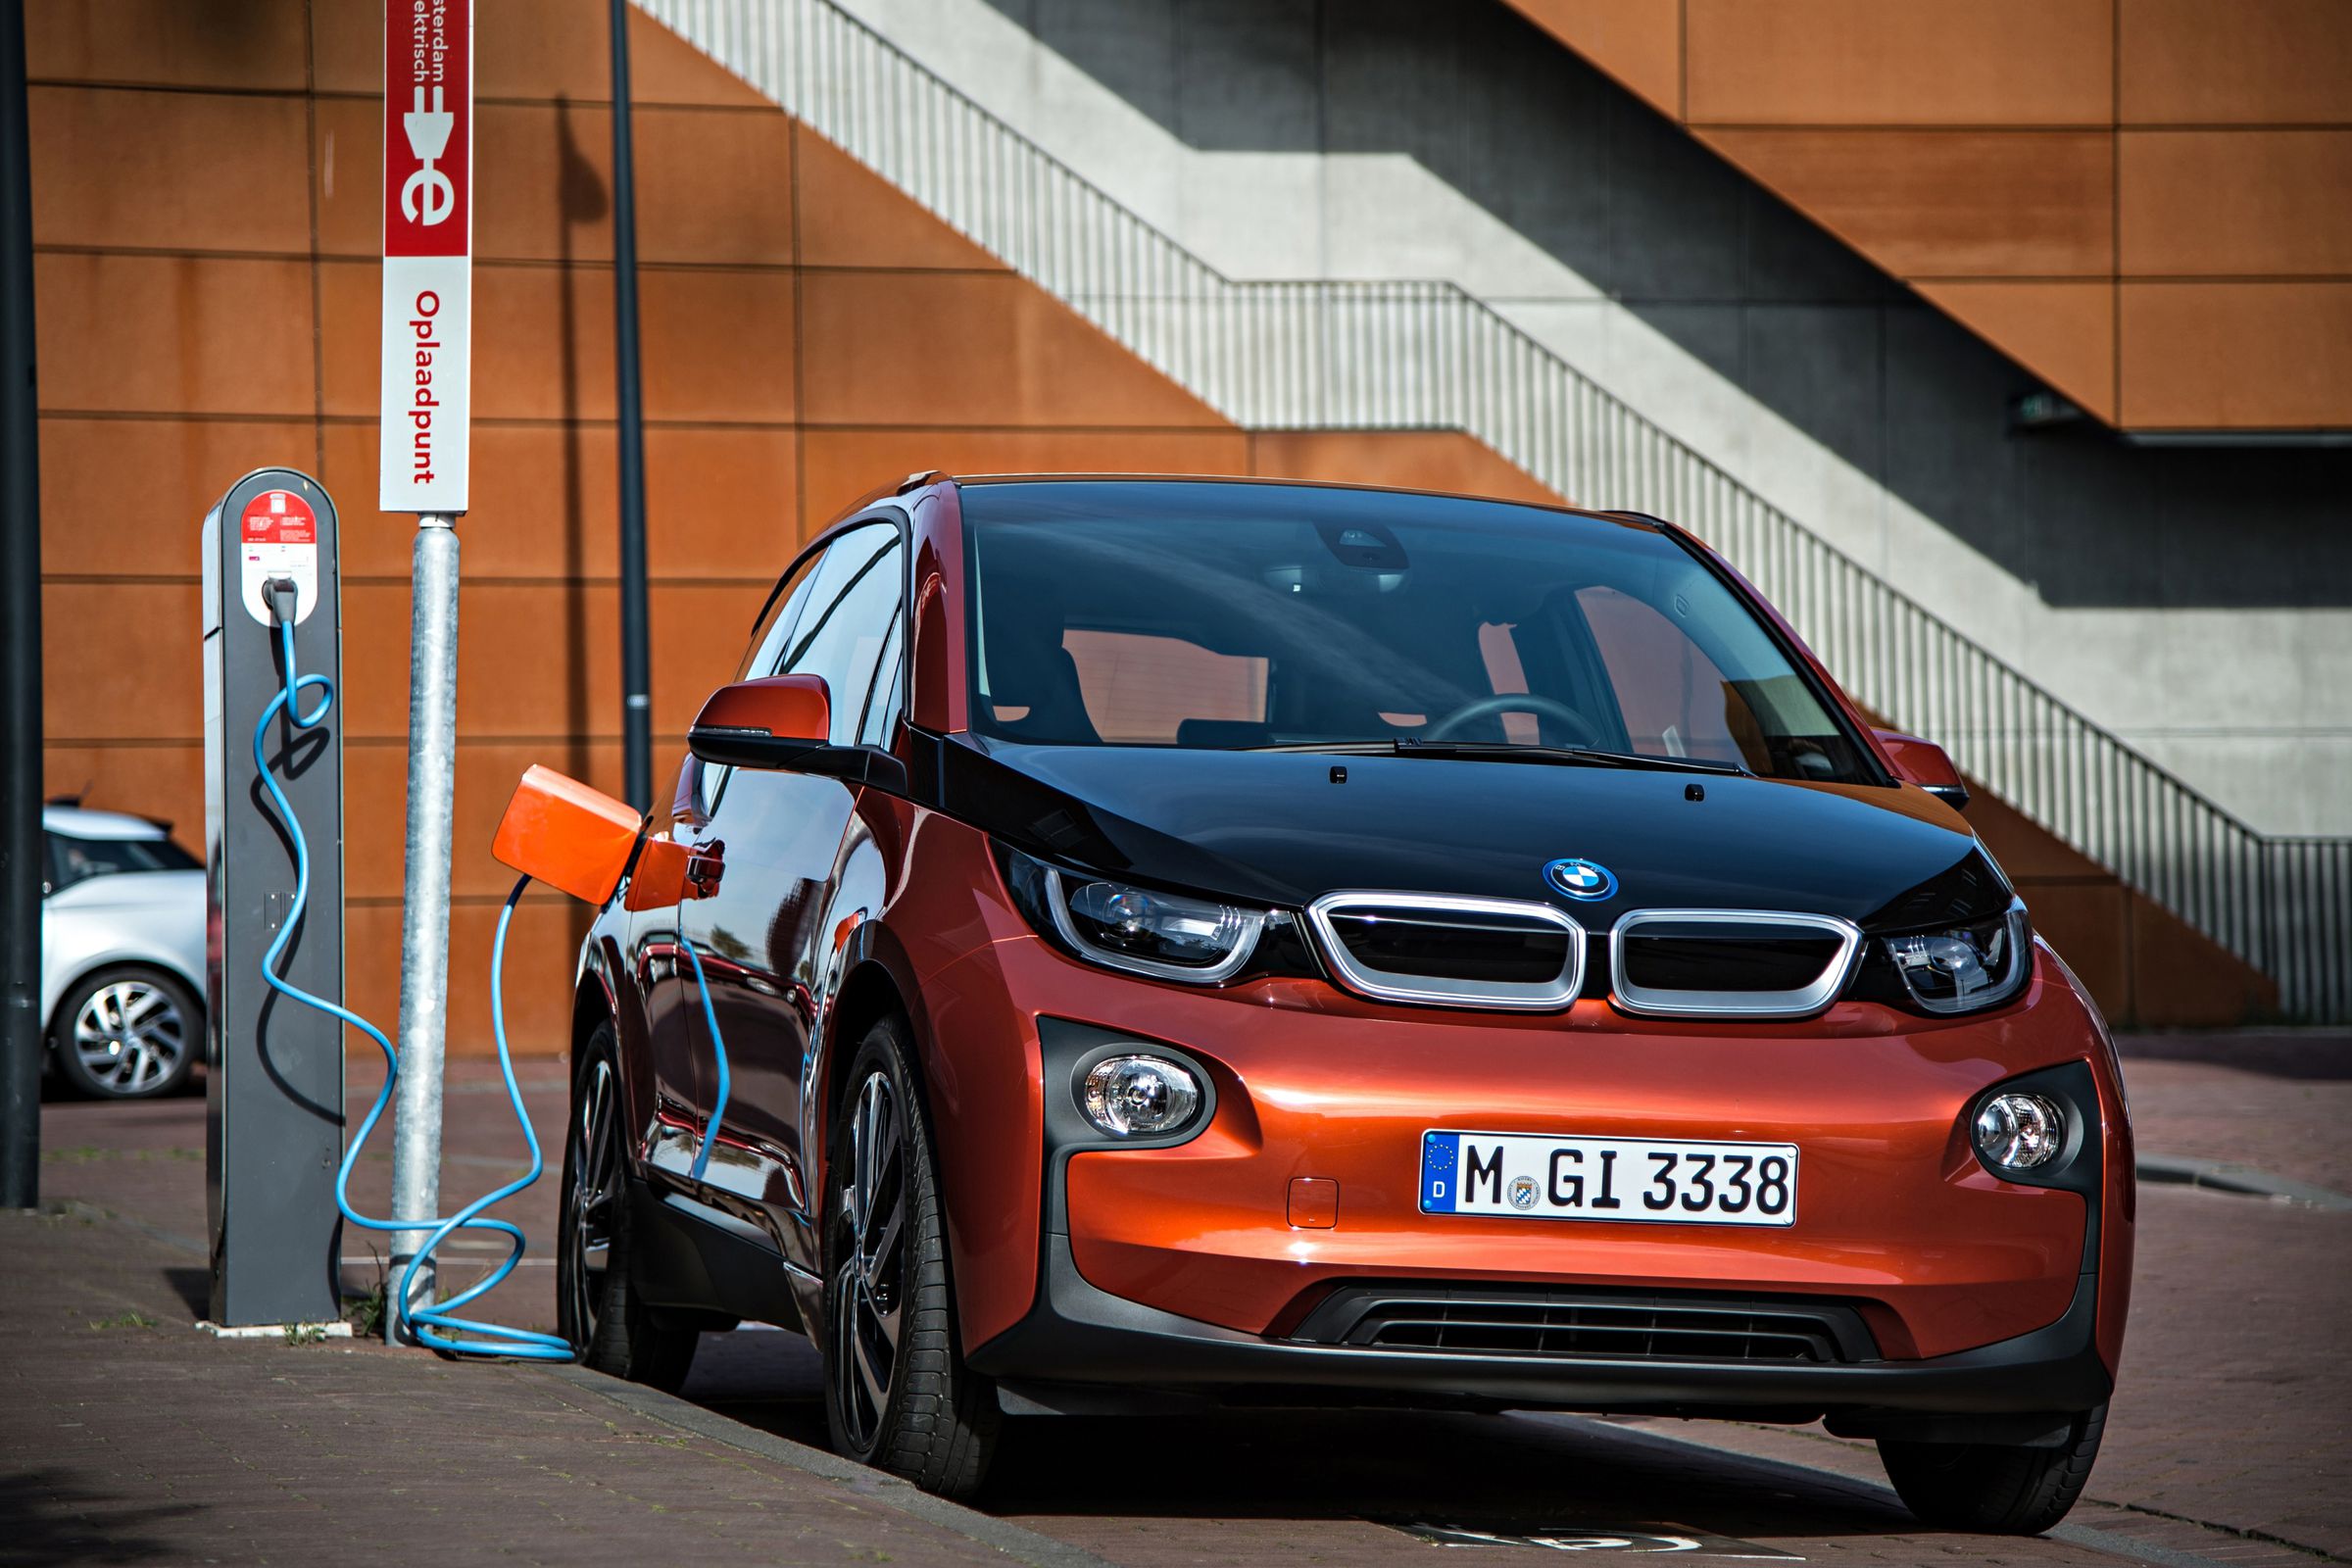 BMW i3 charging